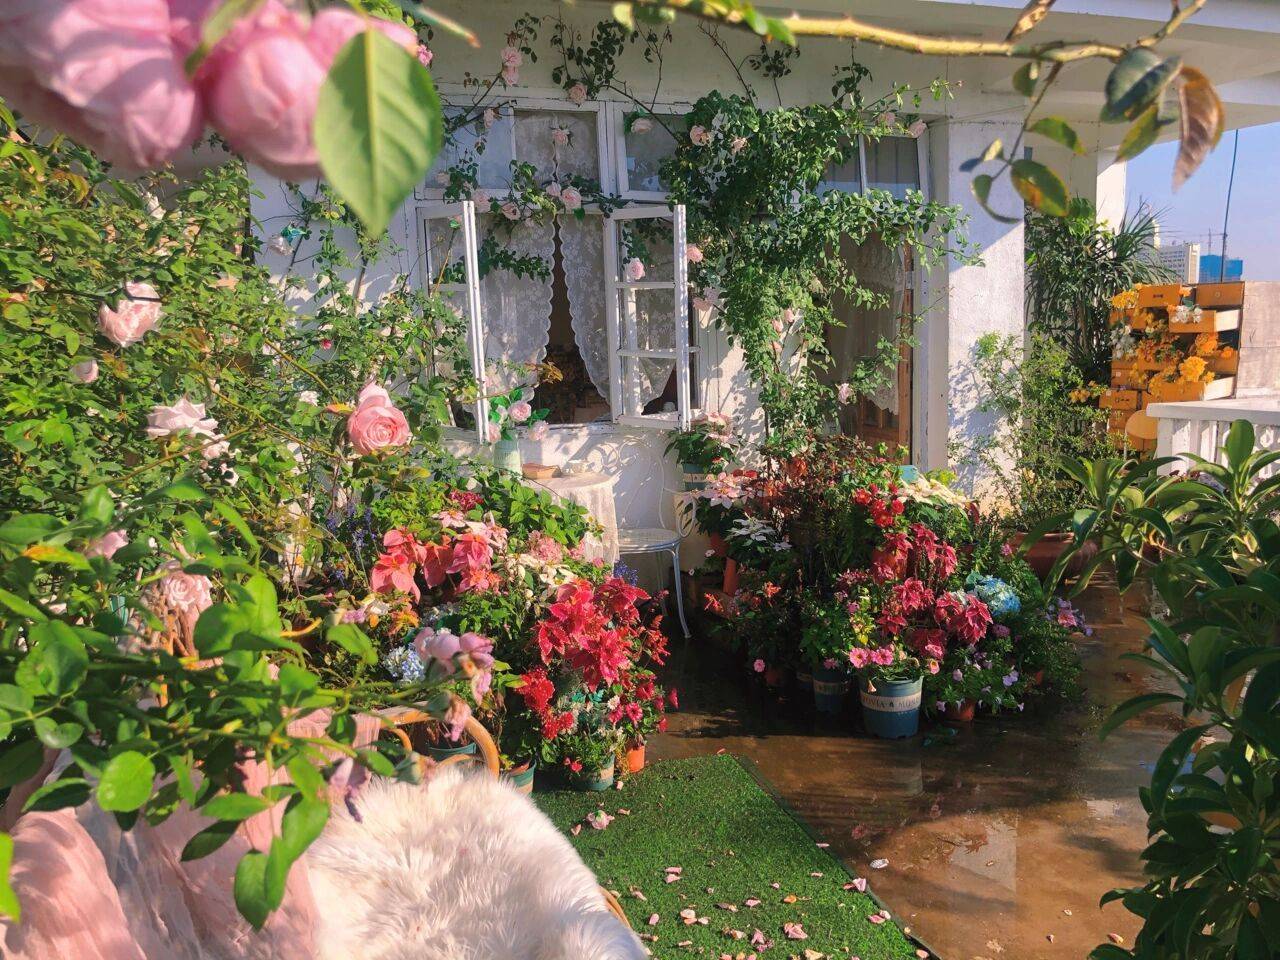 Trồng hoa và thuê nhà trên vườn hoa hồng sẽ mang đến cho bạn một trải nghiệm sống tuyệt vời. Vườn hoa hồng xinh đẹp và thơm ngát sẽ mang đến cho bạn và gia đình cảm giác thư thái và bình yên. Hãy cùng thưởng thức hương thơm và màu sắc của vườn hoa hồng!